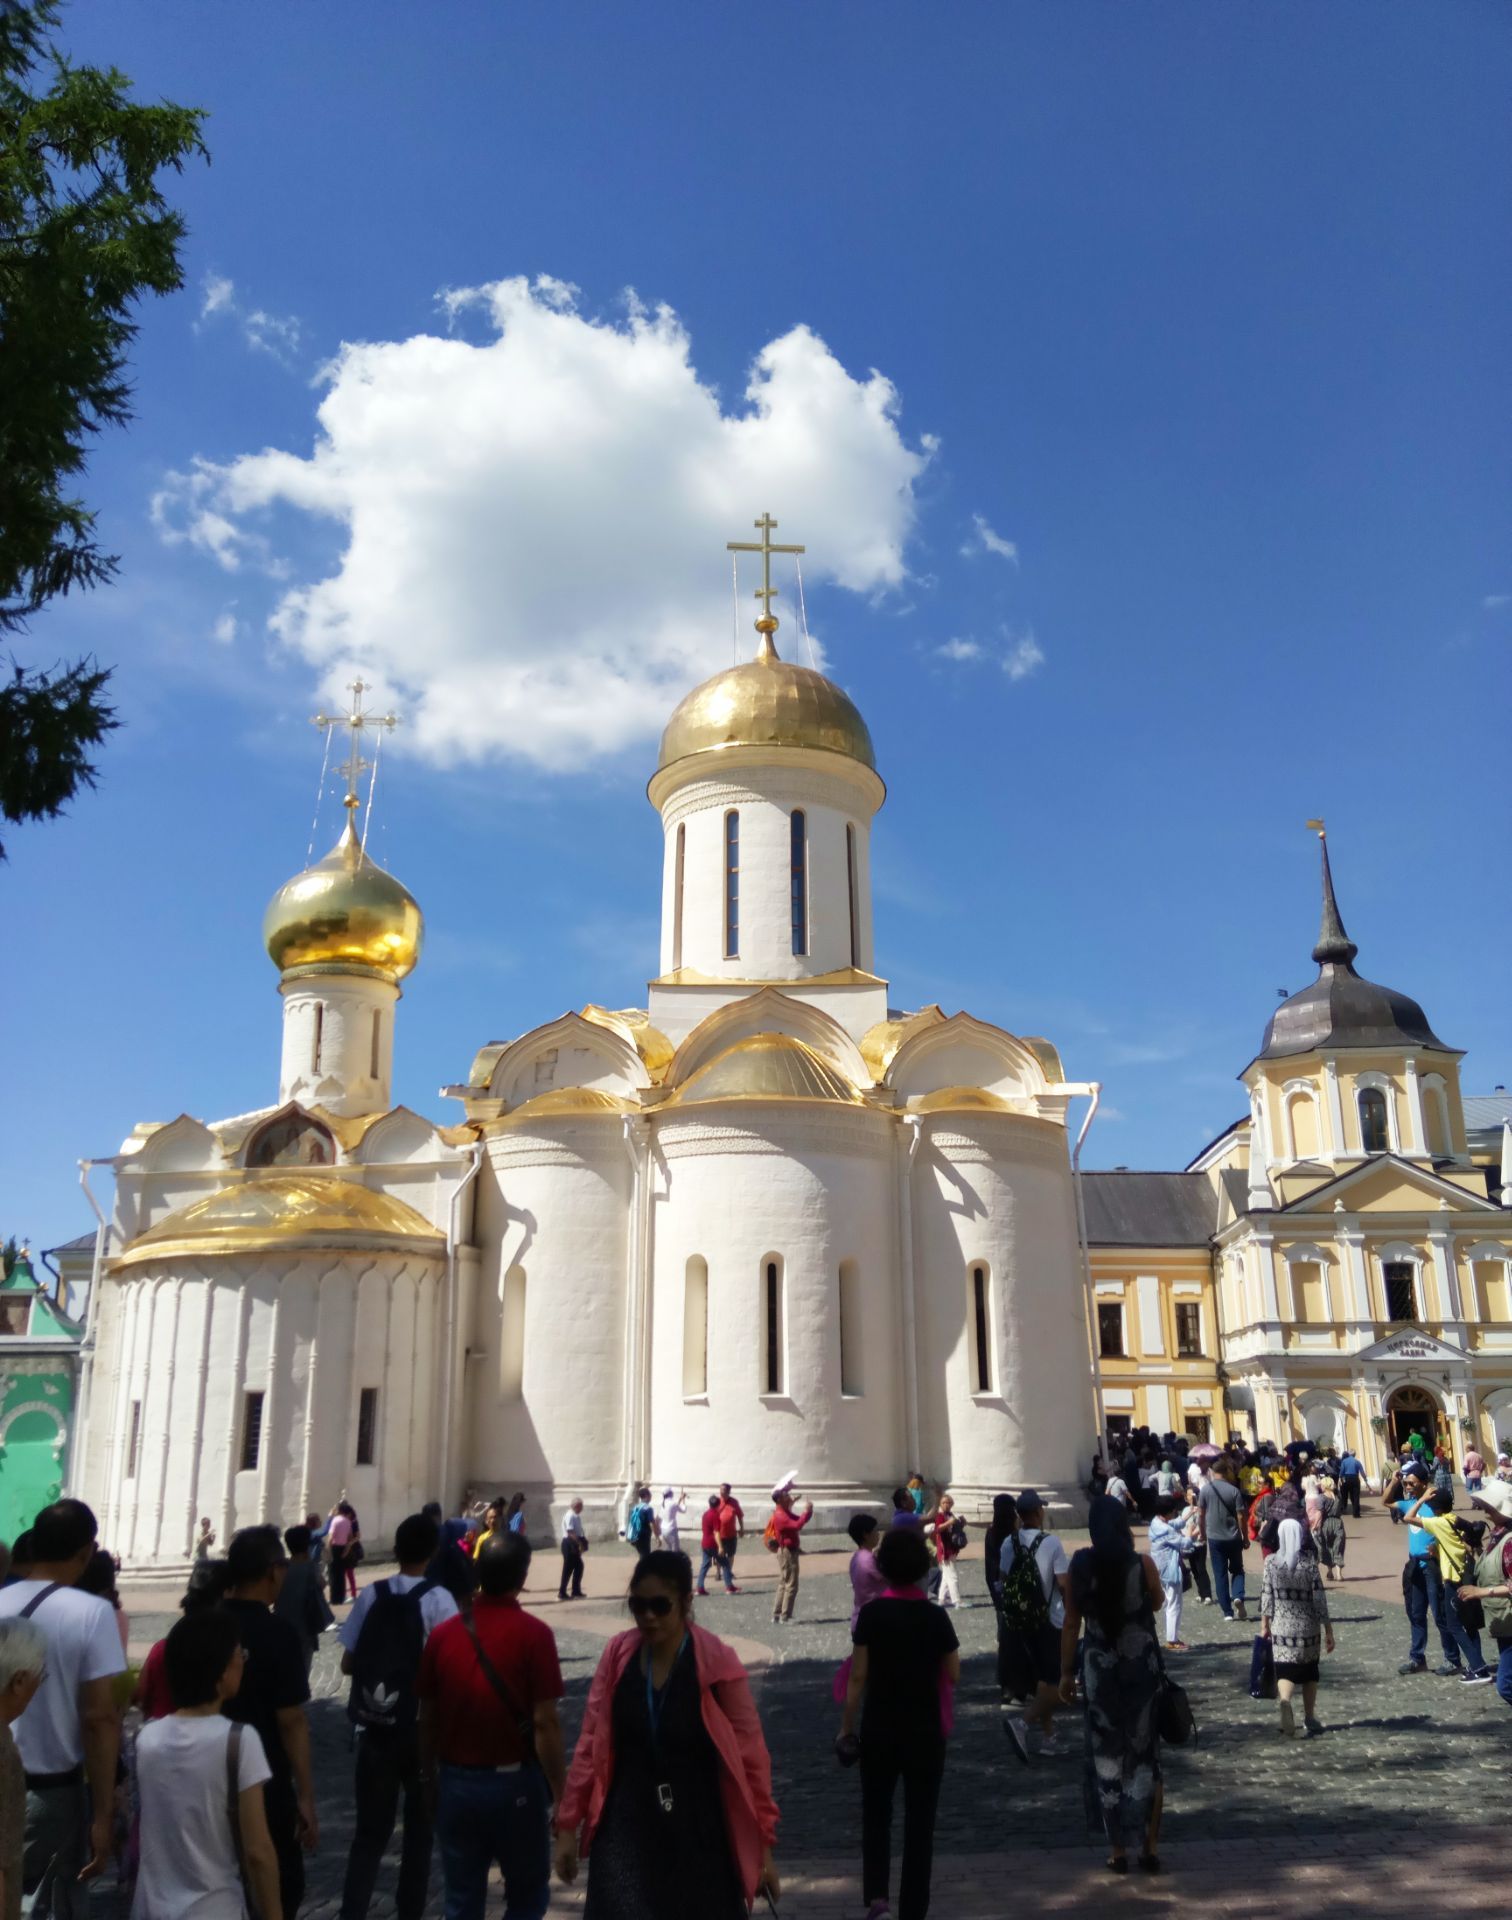 俄罗斯--莫斯科最著名的大教堂之一--谢尔盖耶夫圣三一大教堂。-中关村在线摄影论坛